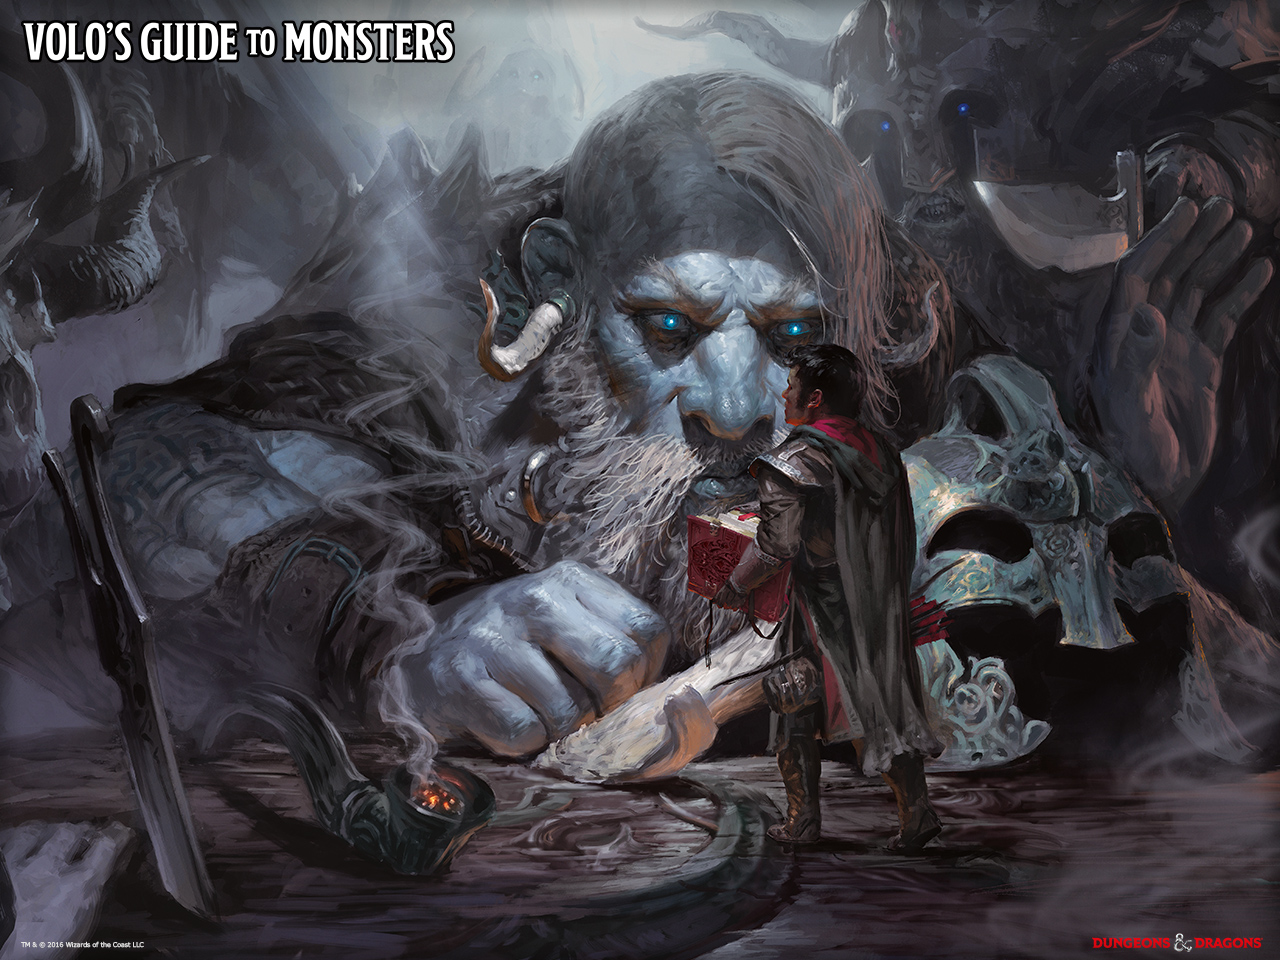 Ein offizielles Wallpaper von Wizards of the Coast von der Reihe "Volo's Guide to Monsters"